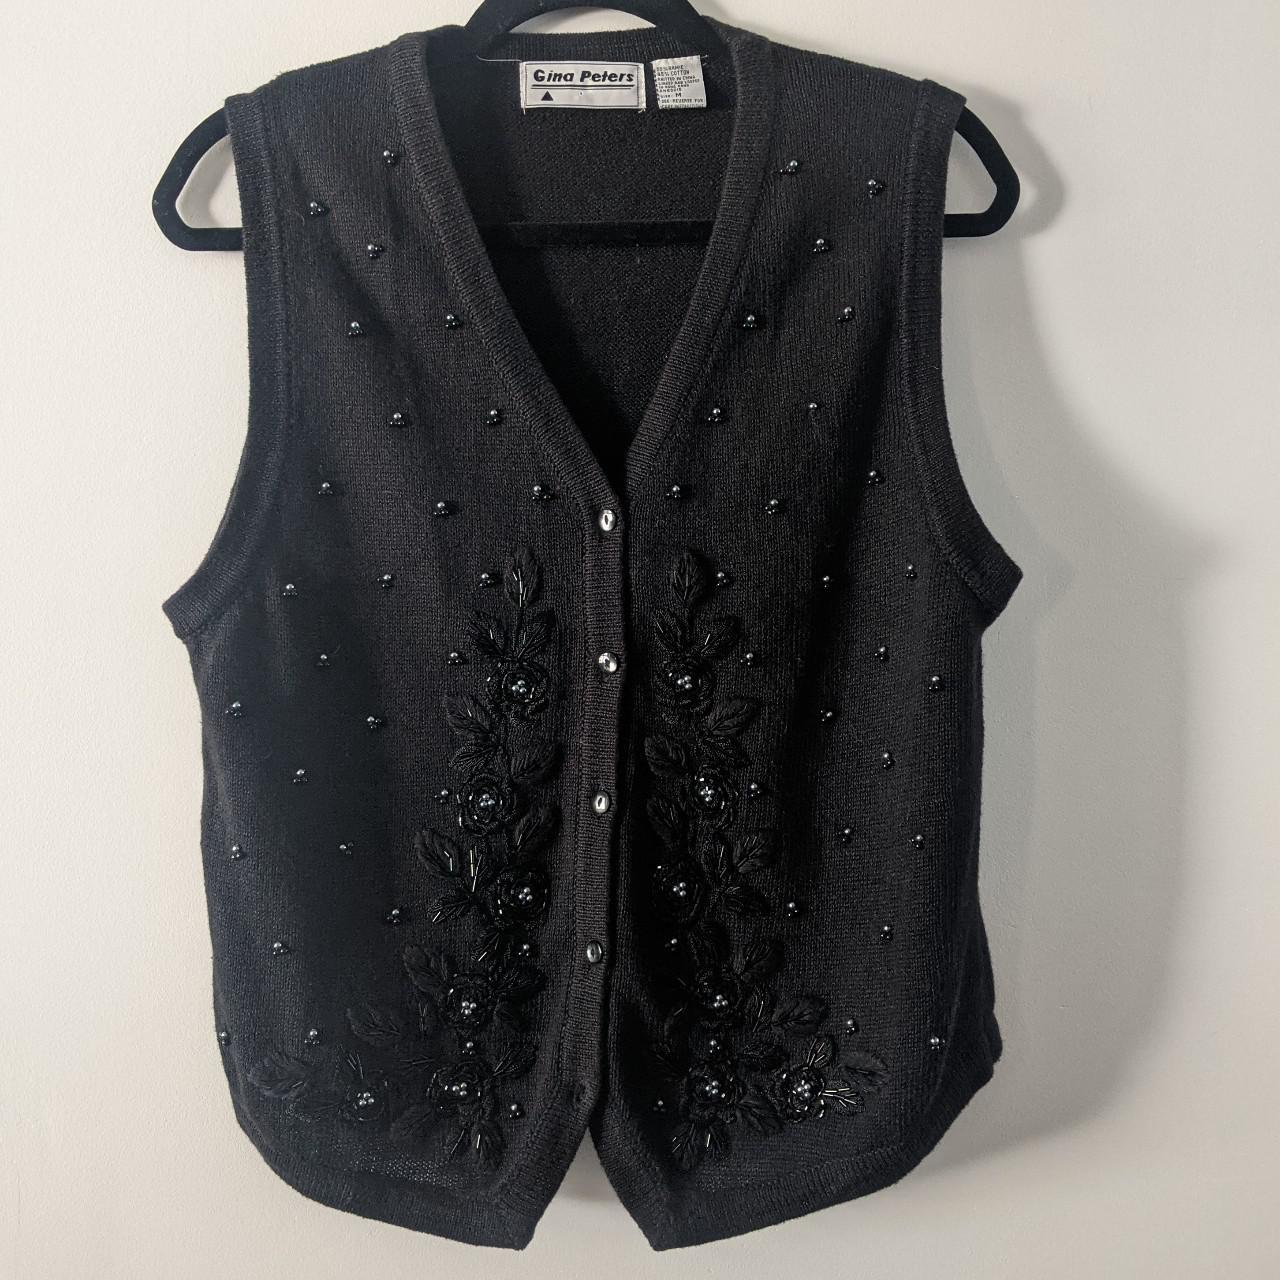 Vintage Gina Peters sweater vest / ғʀᴇᴇ sʜɪᴘᴘɪɴɢ 💌 ... - Depop